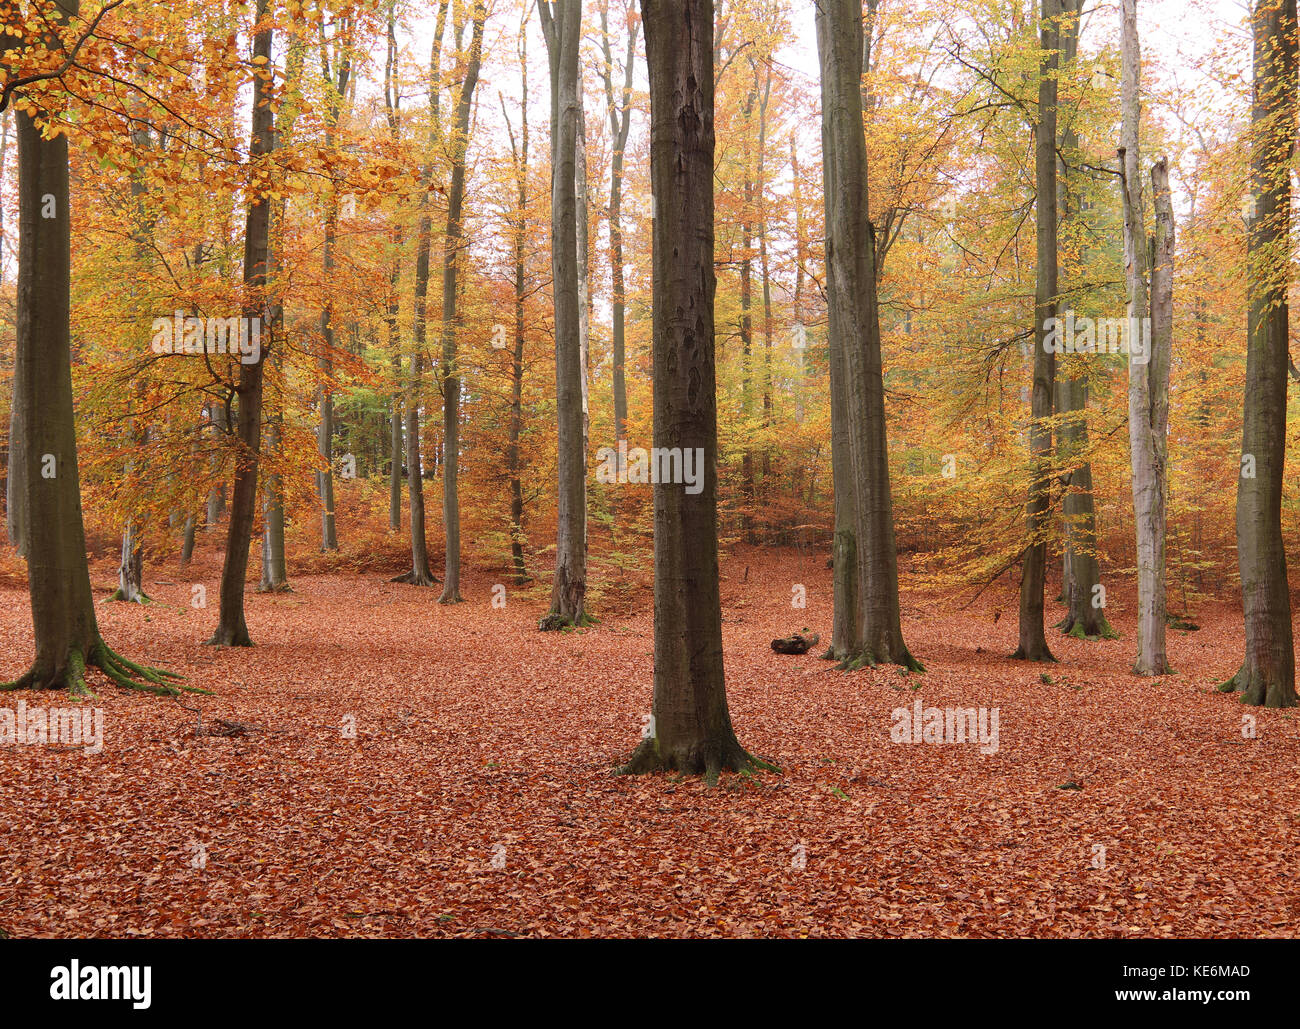 Beechwood at autumn Stock Photo